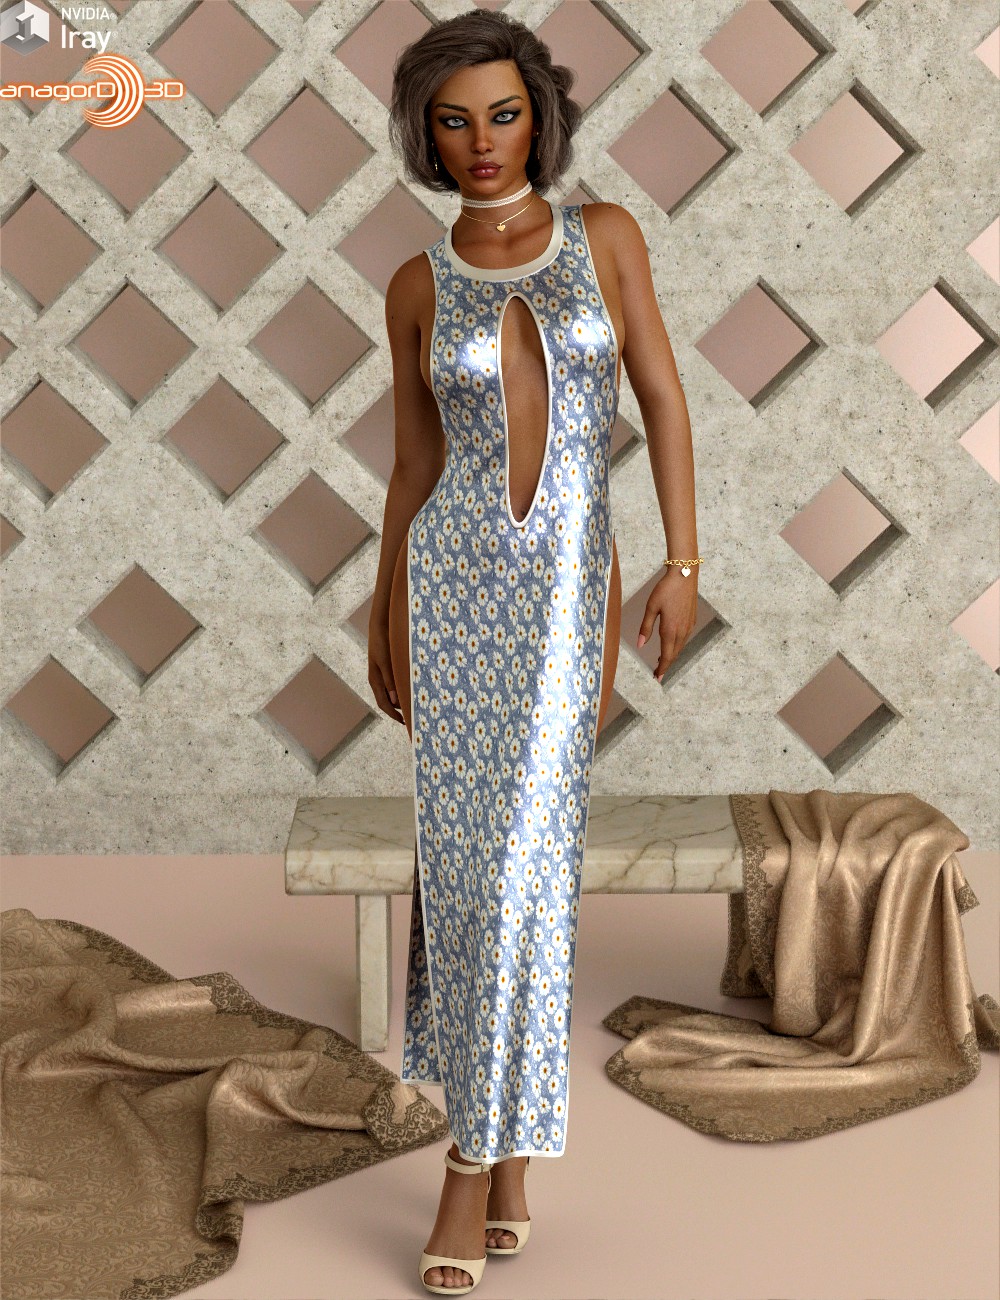 VERSUS - Dress of Slit Dress Package for Genesis 8 Females